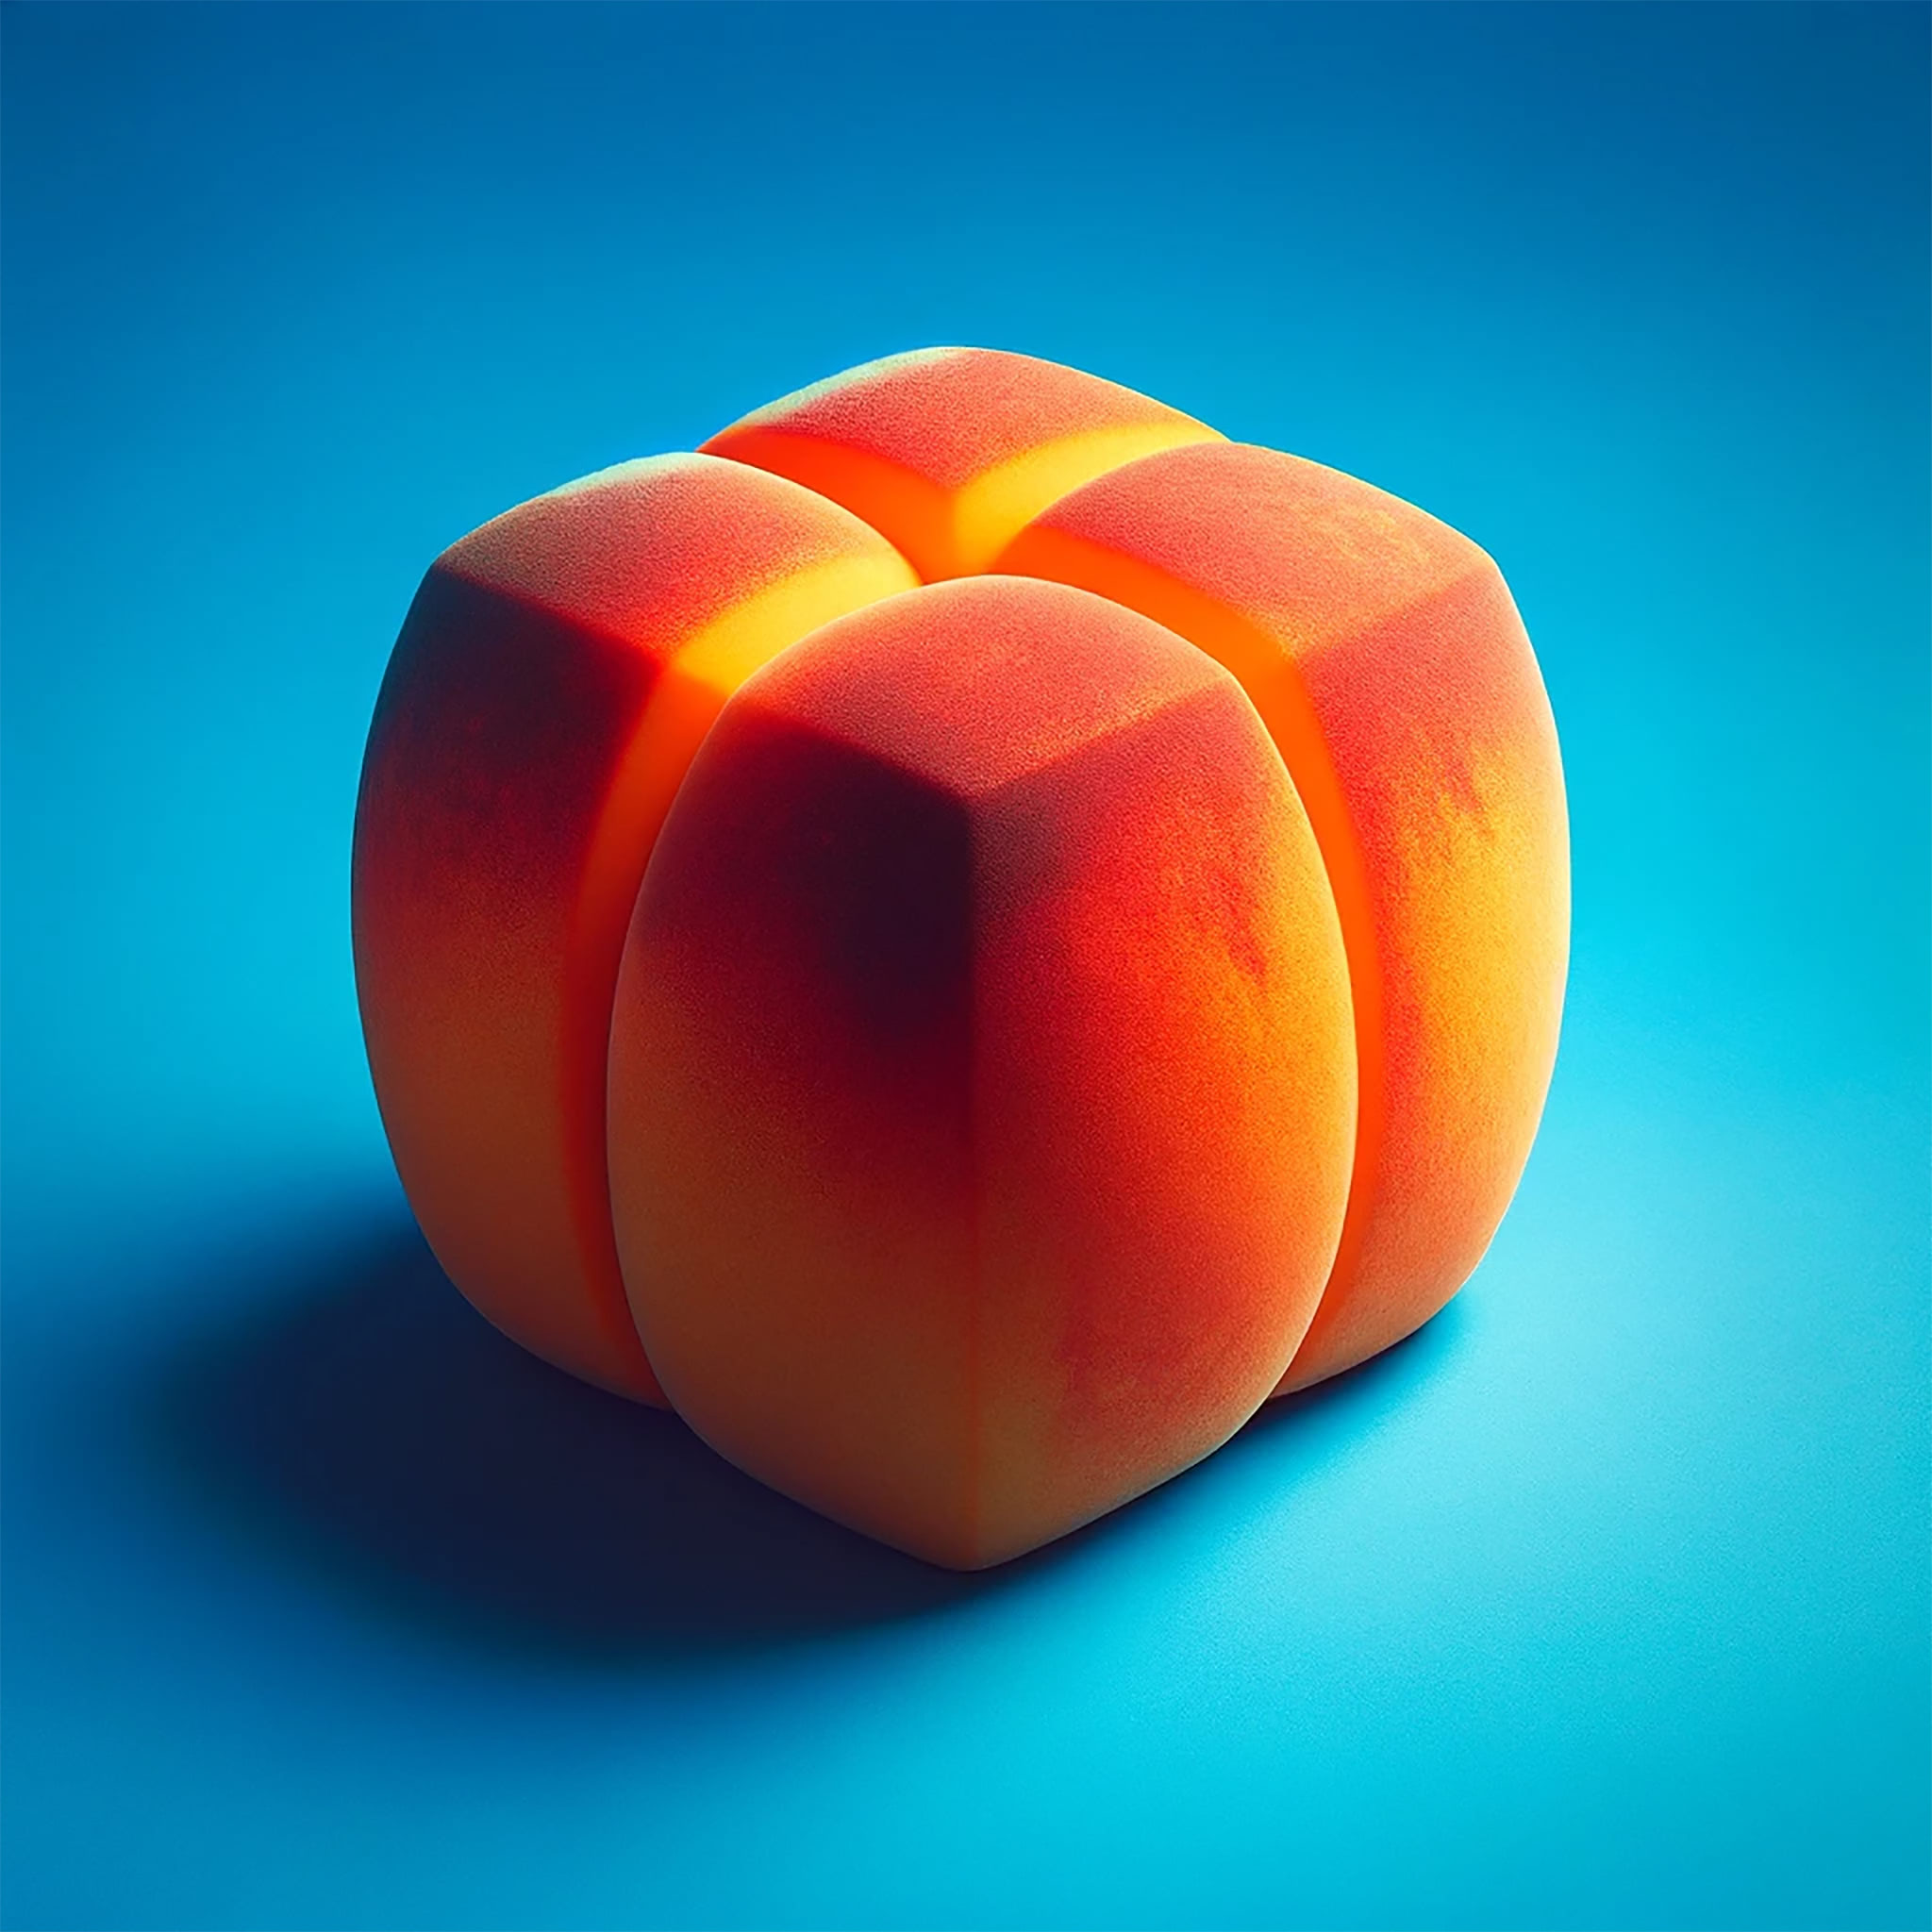 squared-peach-blue-background